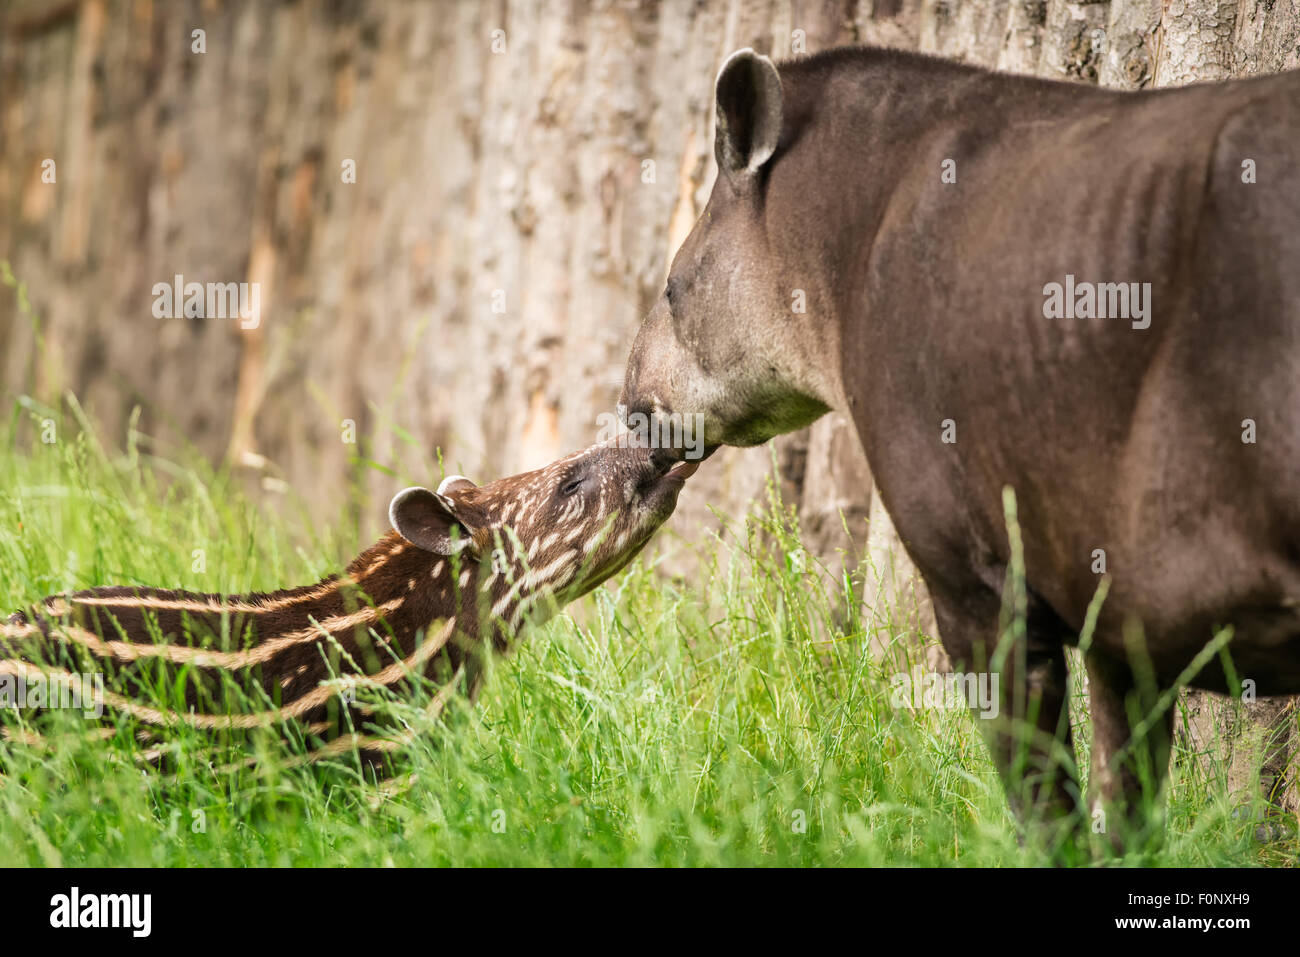 Bébé de l'Amérique du Sud en voie de disparition (Tapirus terrestris tapir), également appelé tapir brésilien ou lowland tapir avec sa mère Banque D'Images